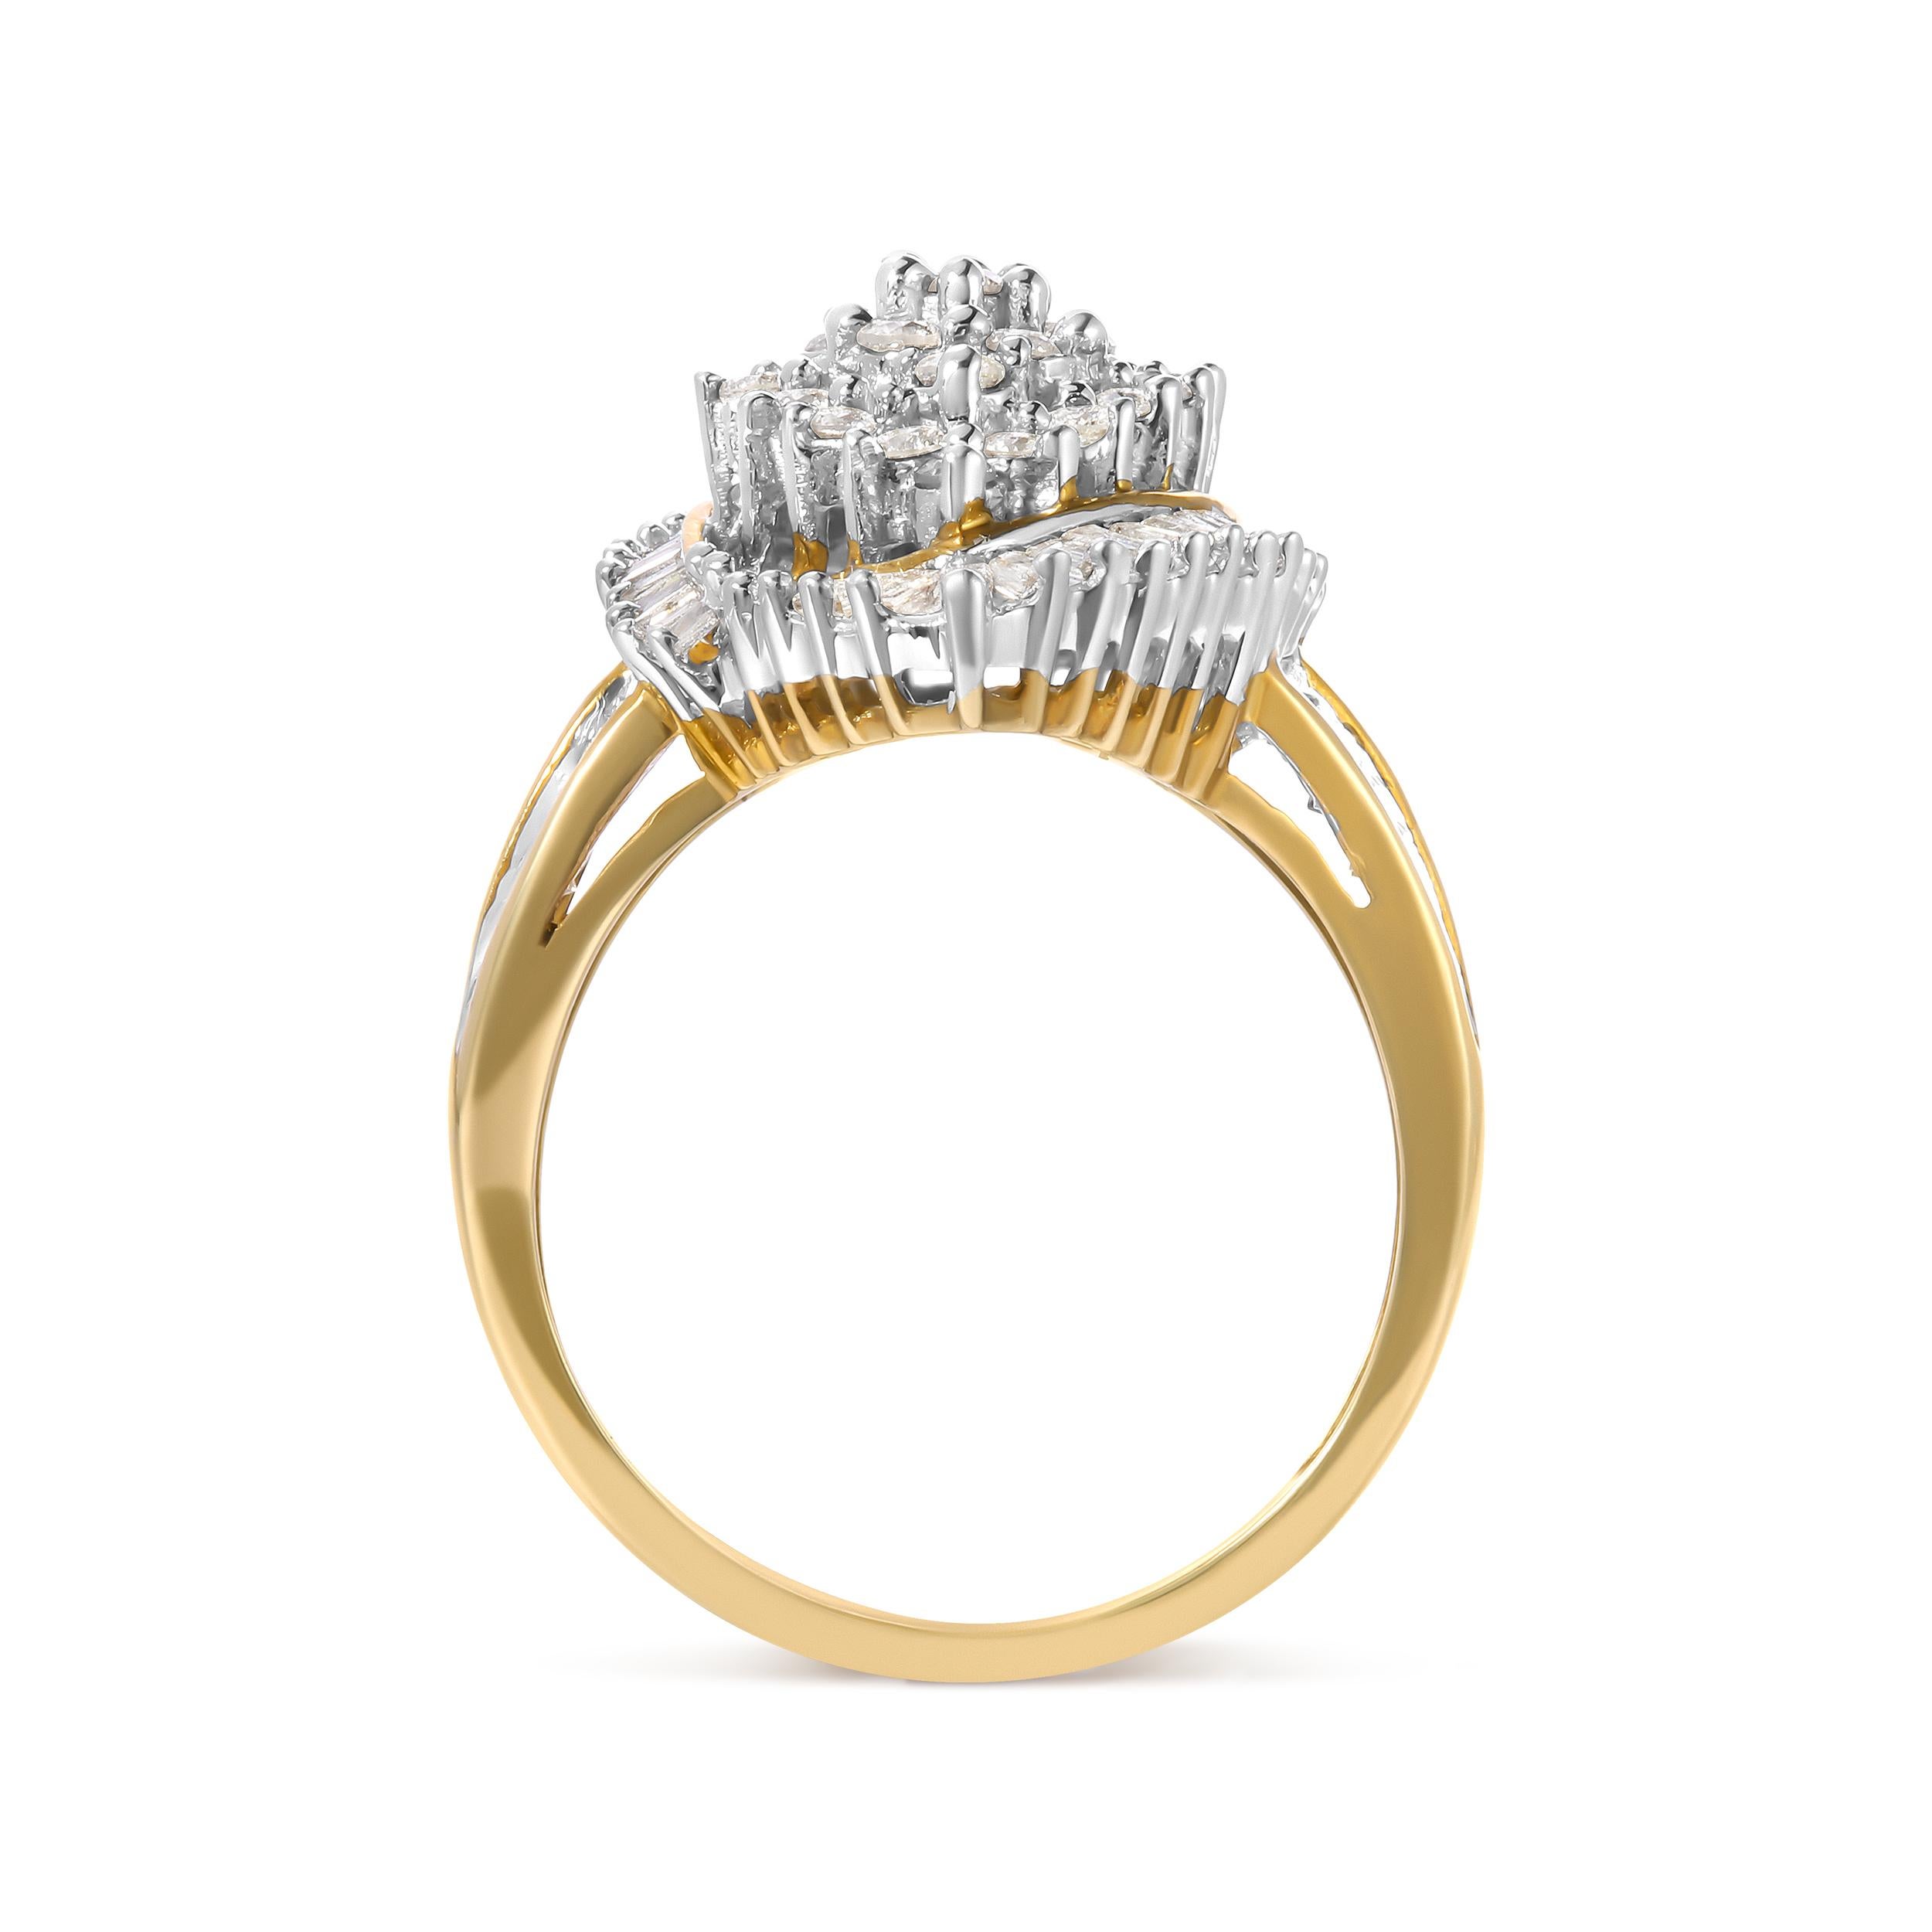 Laissez-vous séduire par l'allure exquise de notre bague à diamants en or jaune 10K. Ce chef-d'œuvre captivant est conçu pour les femmes exigeantes qui recherchent l'élégance et la brillance. Réalisée avec un art méticuleux, elle présente une fusion